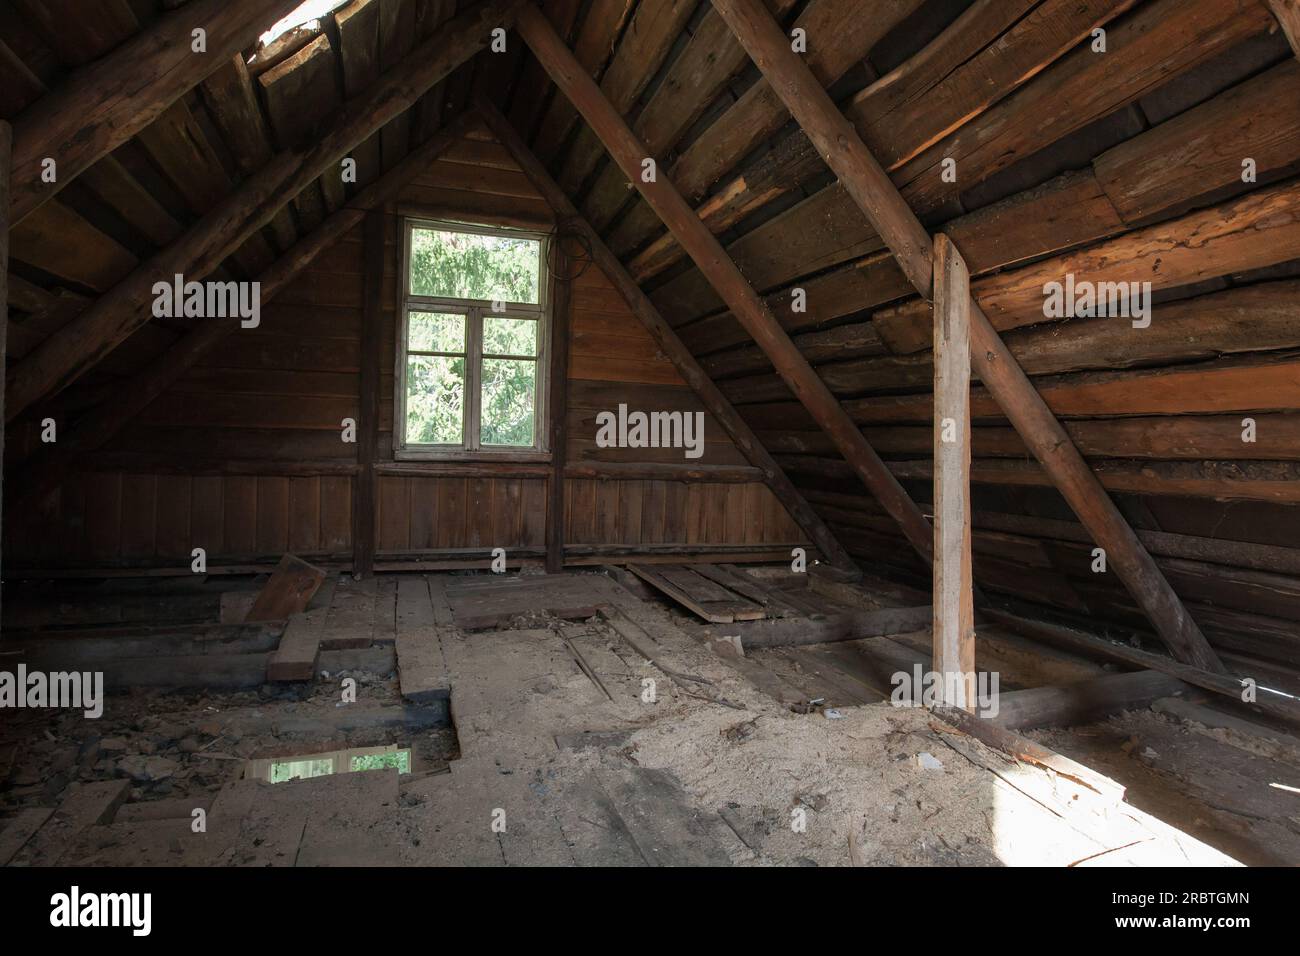 Dunkles abstraktes Grunge-Holz-Interieur, Ausblick auf verlassene Dachzimmer Stockfoto